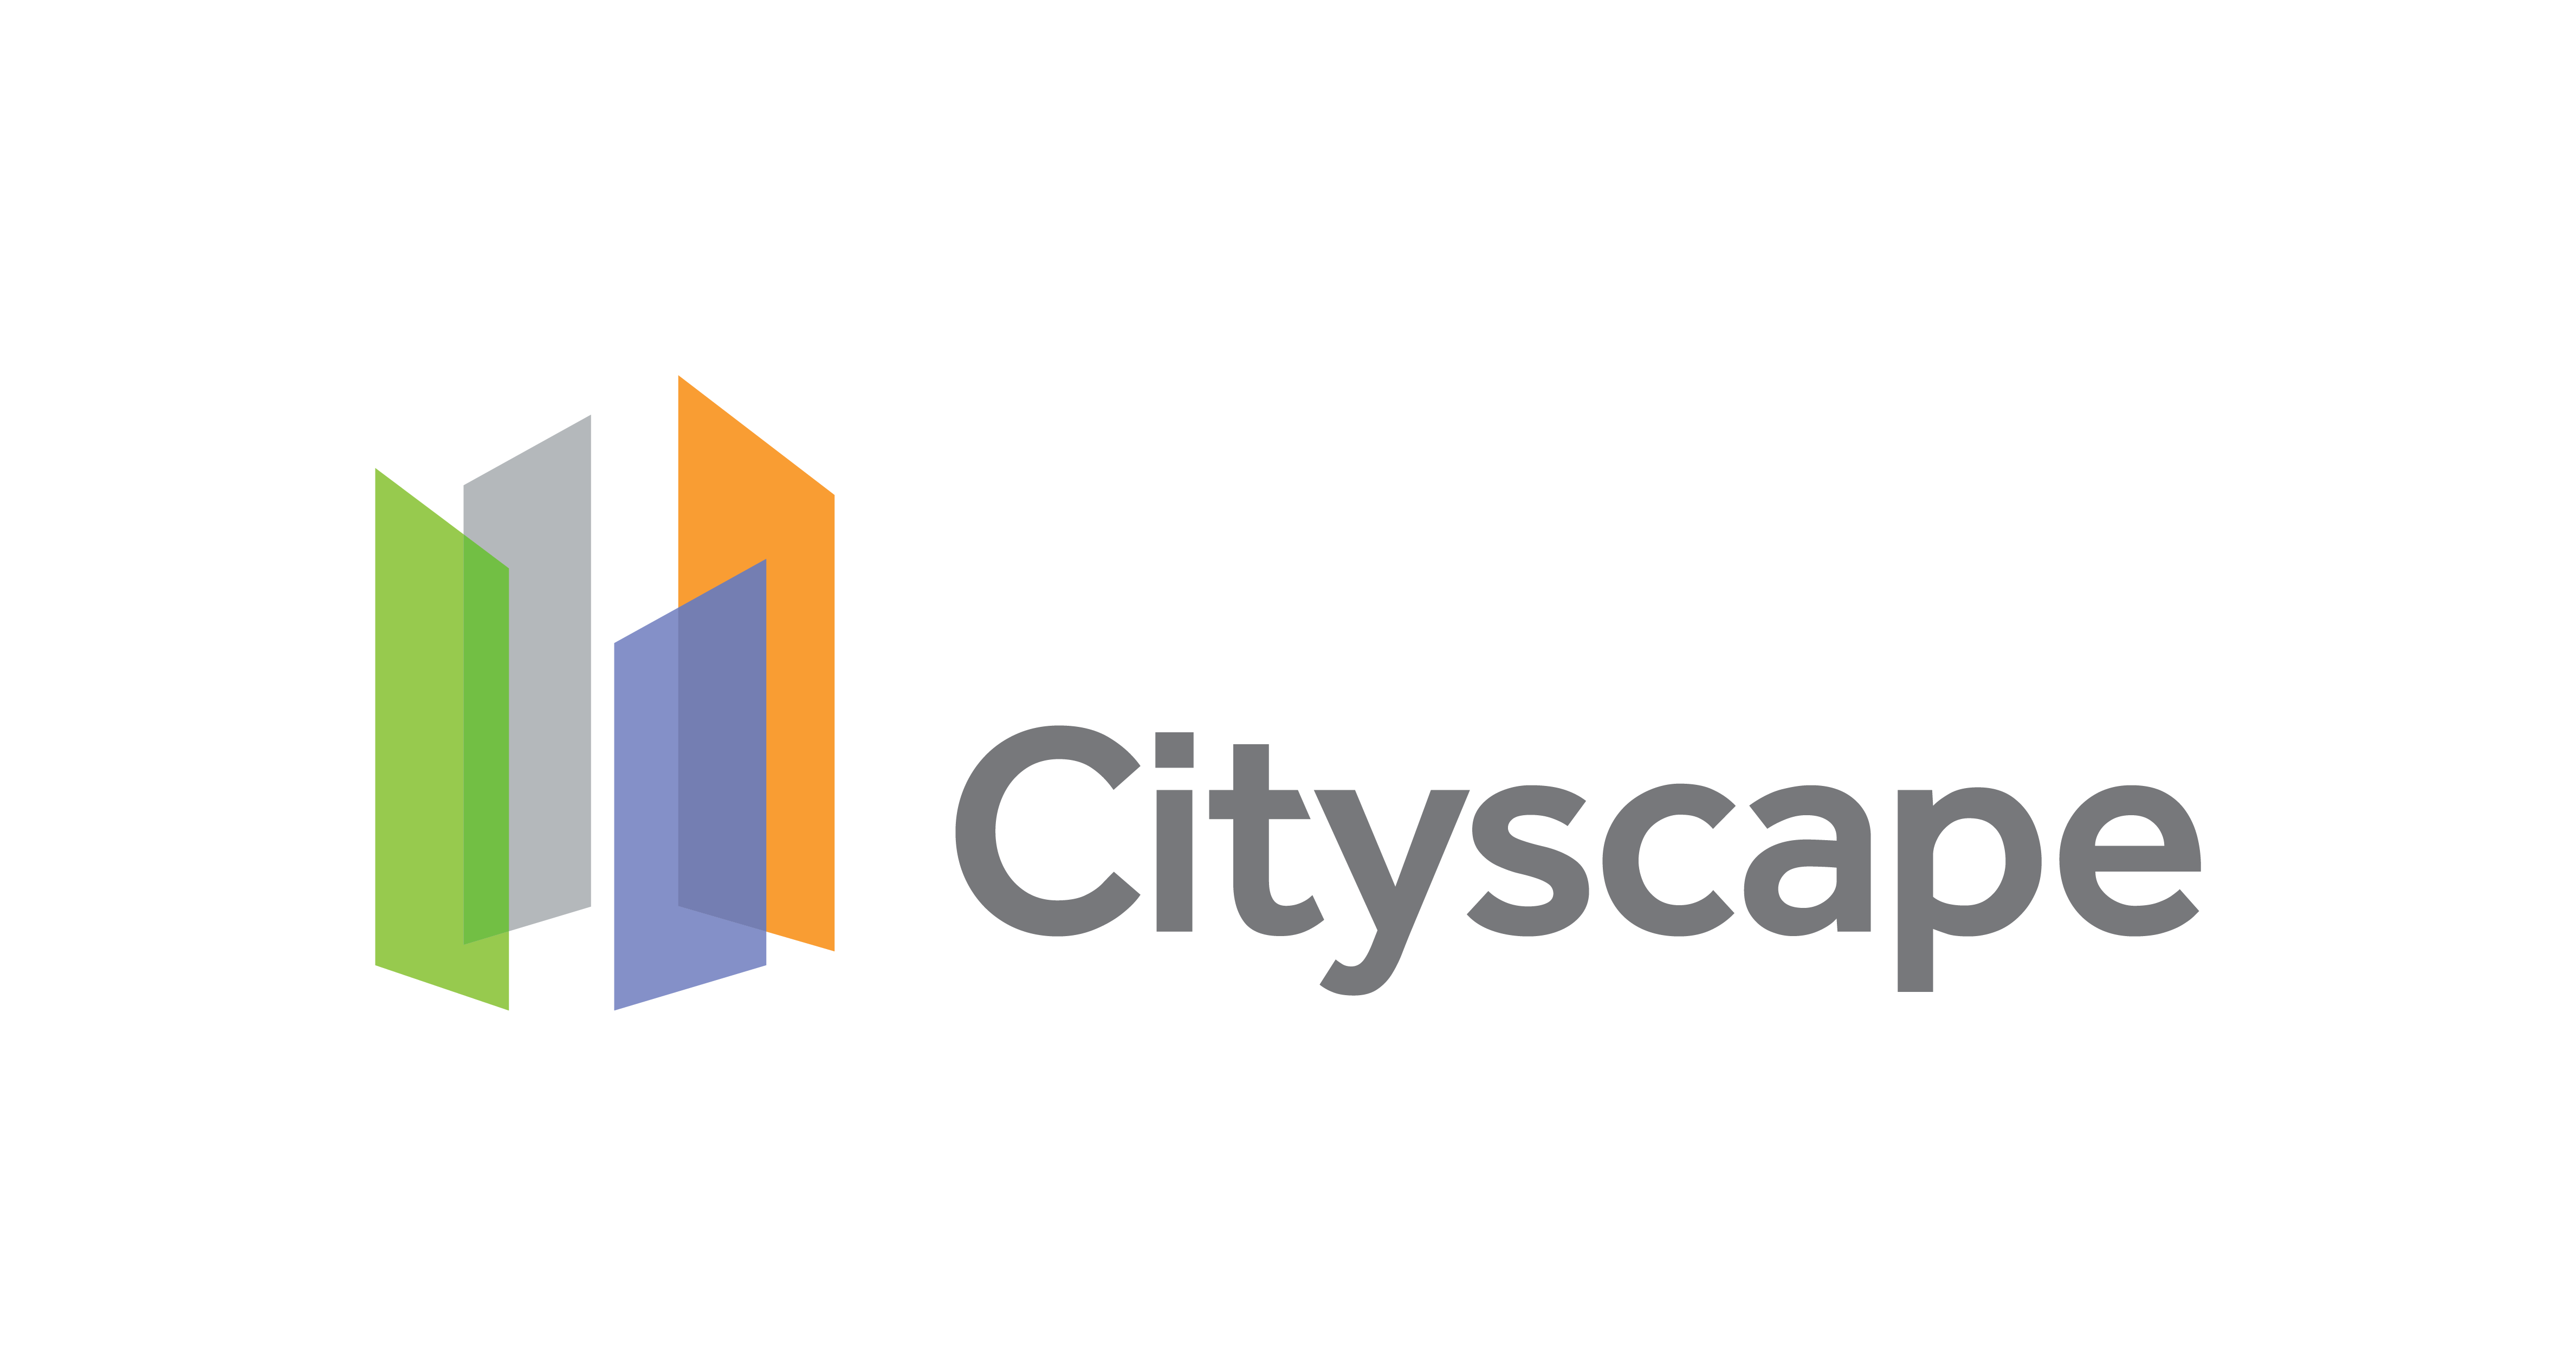 Cityscape 2021